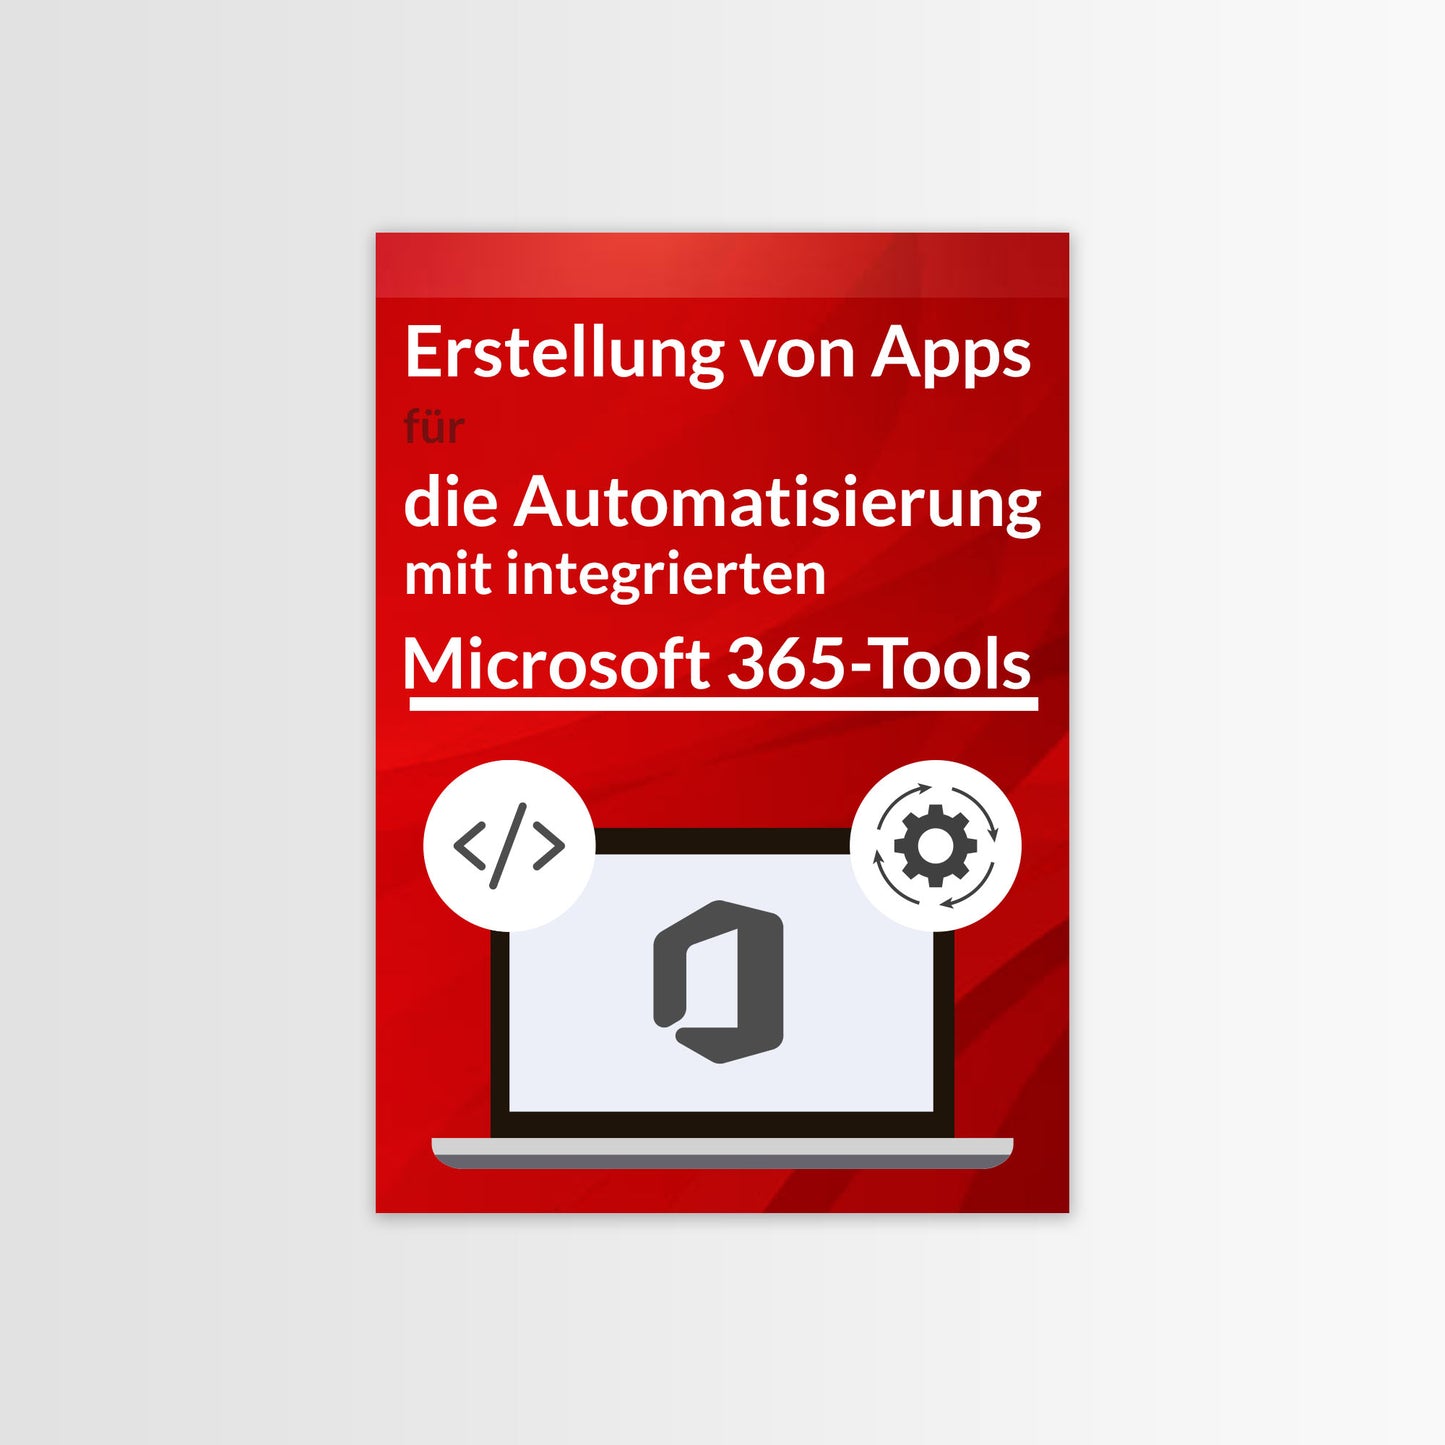 Erstellung von Apps für die Automatisierung mit integrierten Microsoft 365-Tools